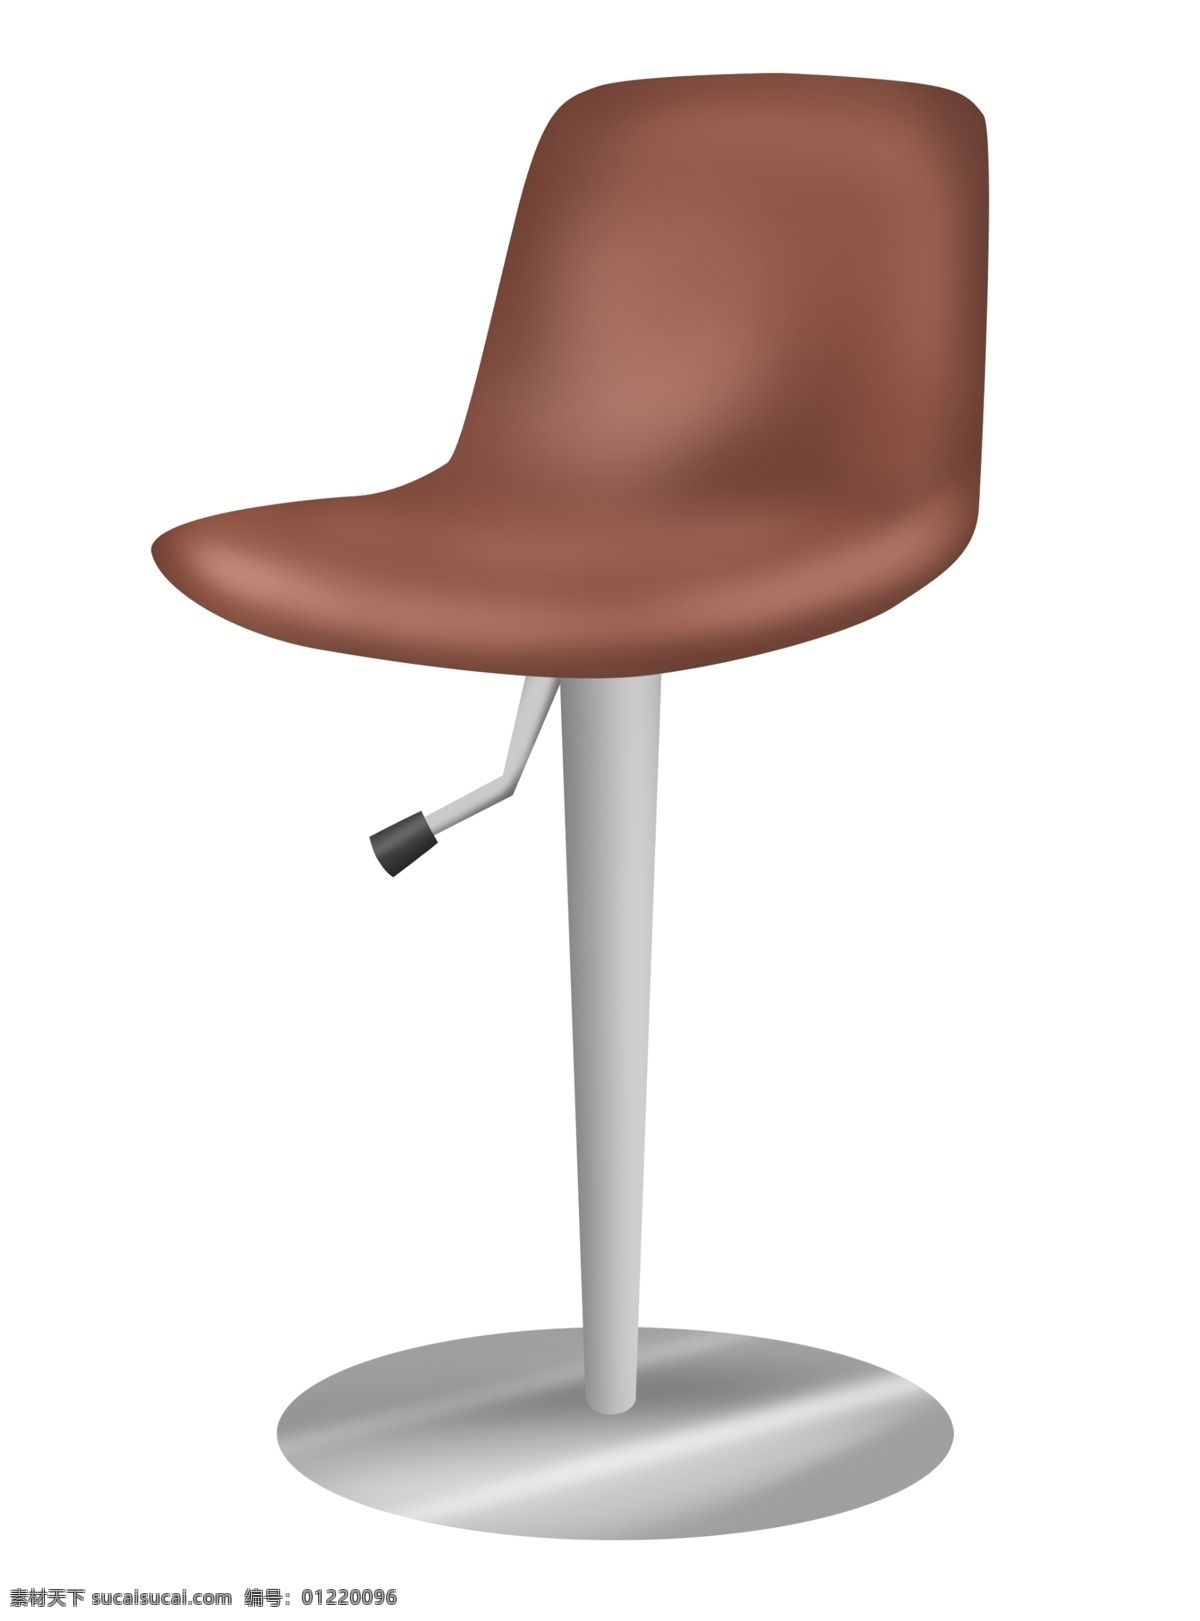 棕色 椅子 家具 插画 棕色的椅子 卡通插画 椅子插画 家具插画 家具椅子 凳子座位 升降的椅子